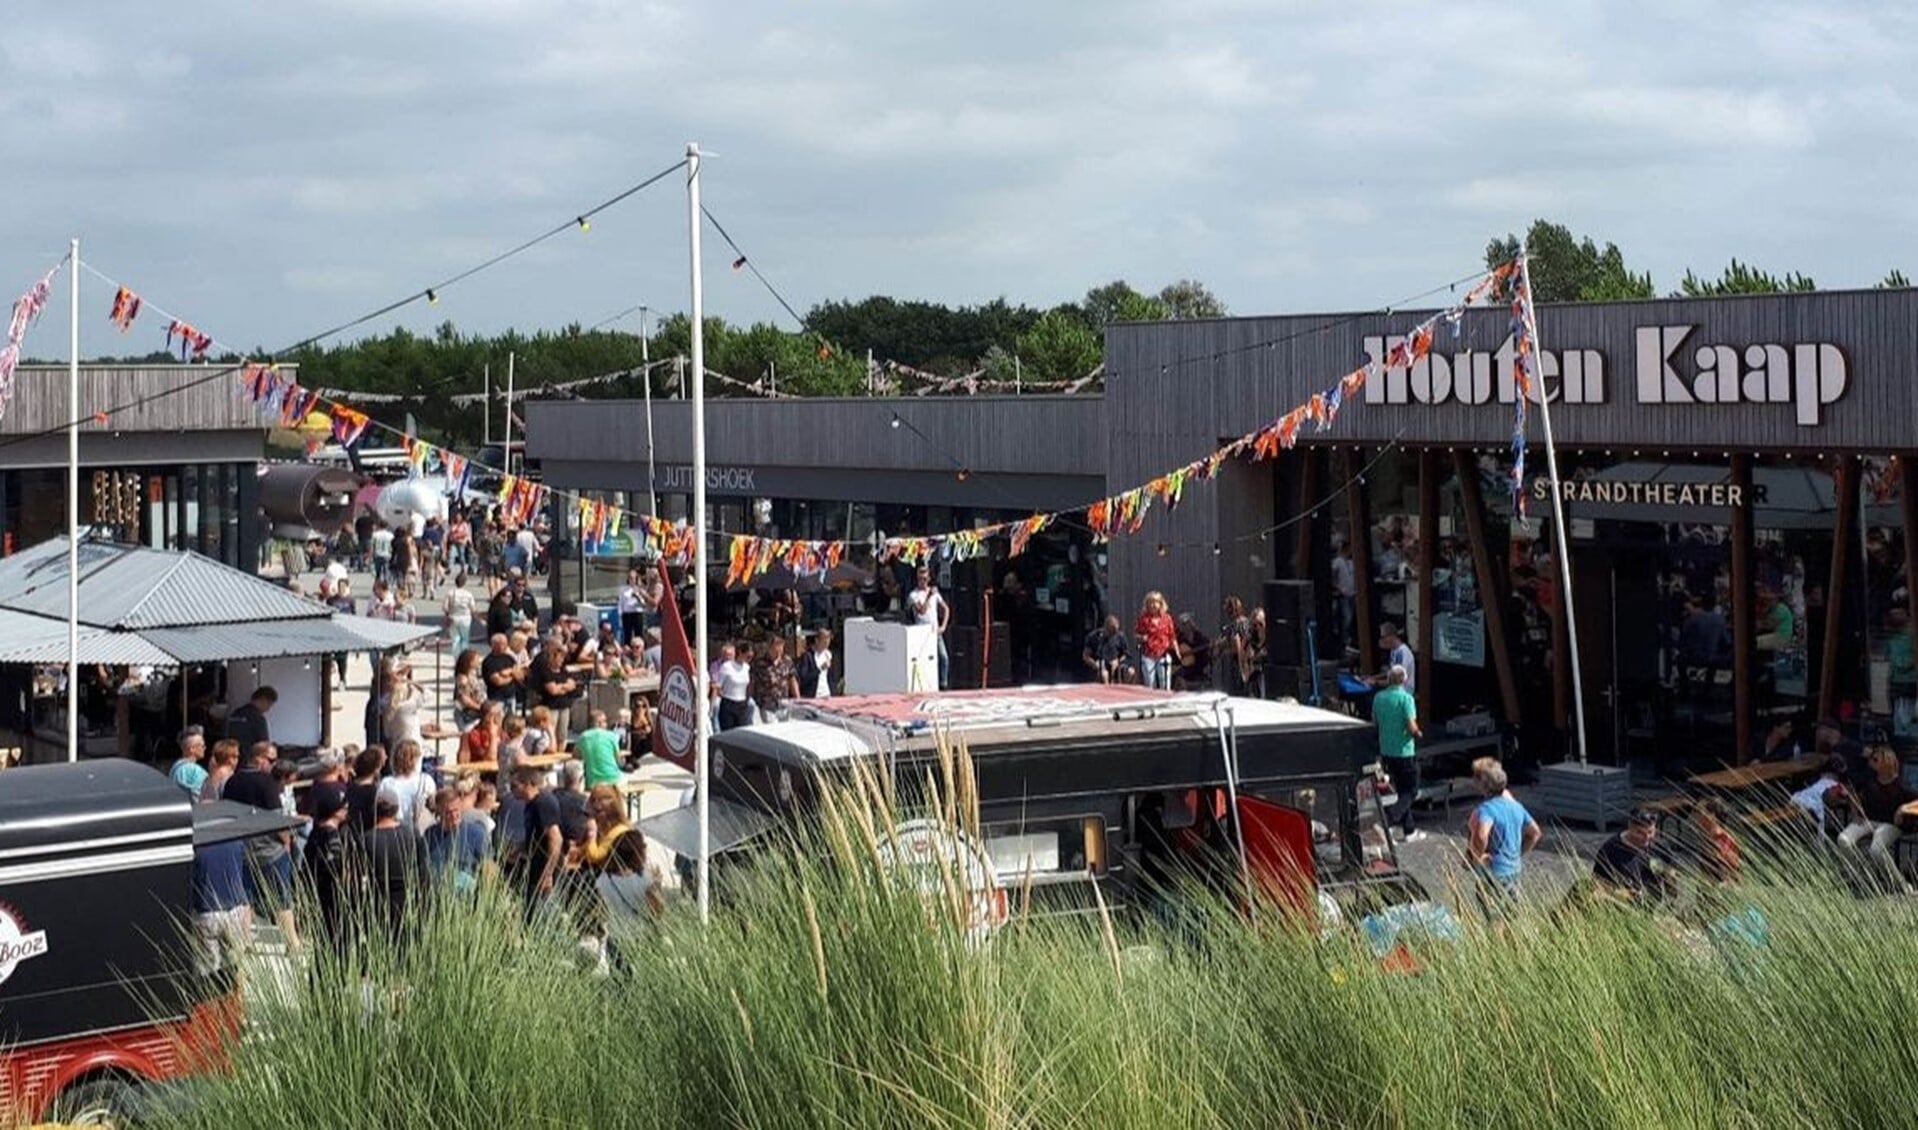 Do 22-8 t/m zo 25-8 Foodtruckfestival Smaak aan Zee met 18 foodtrucks, live muziek, dj's en een kinderplein.